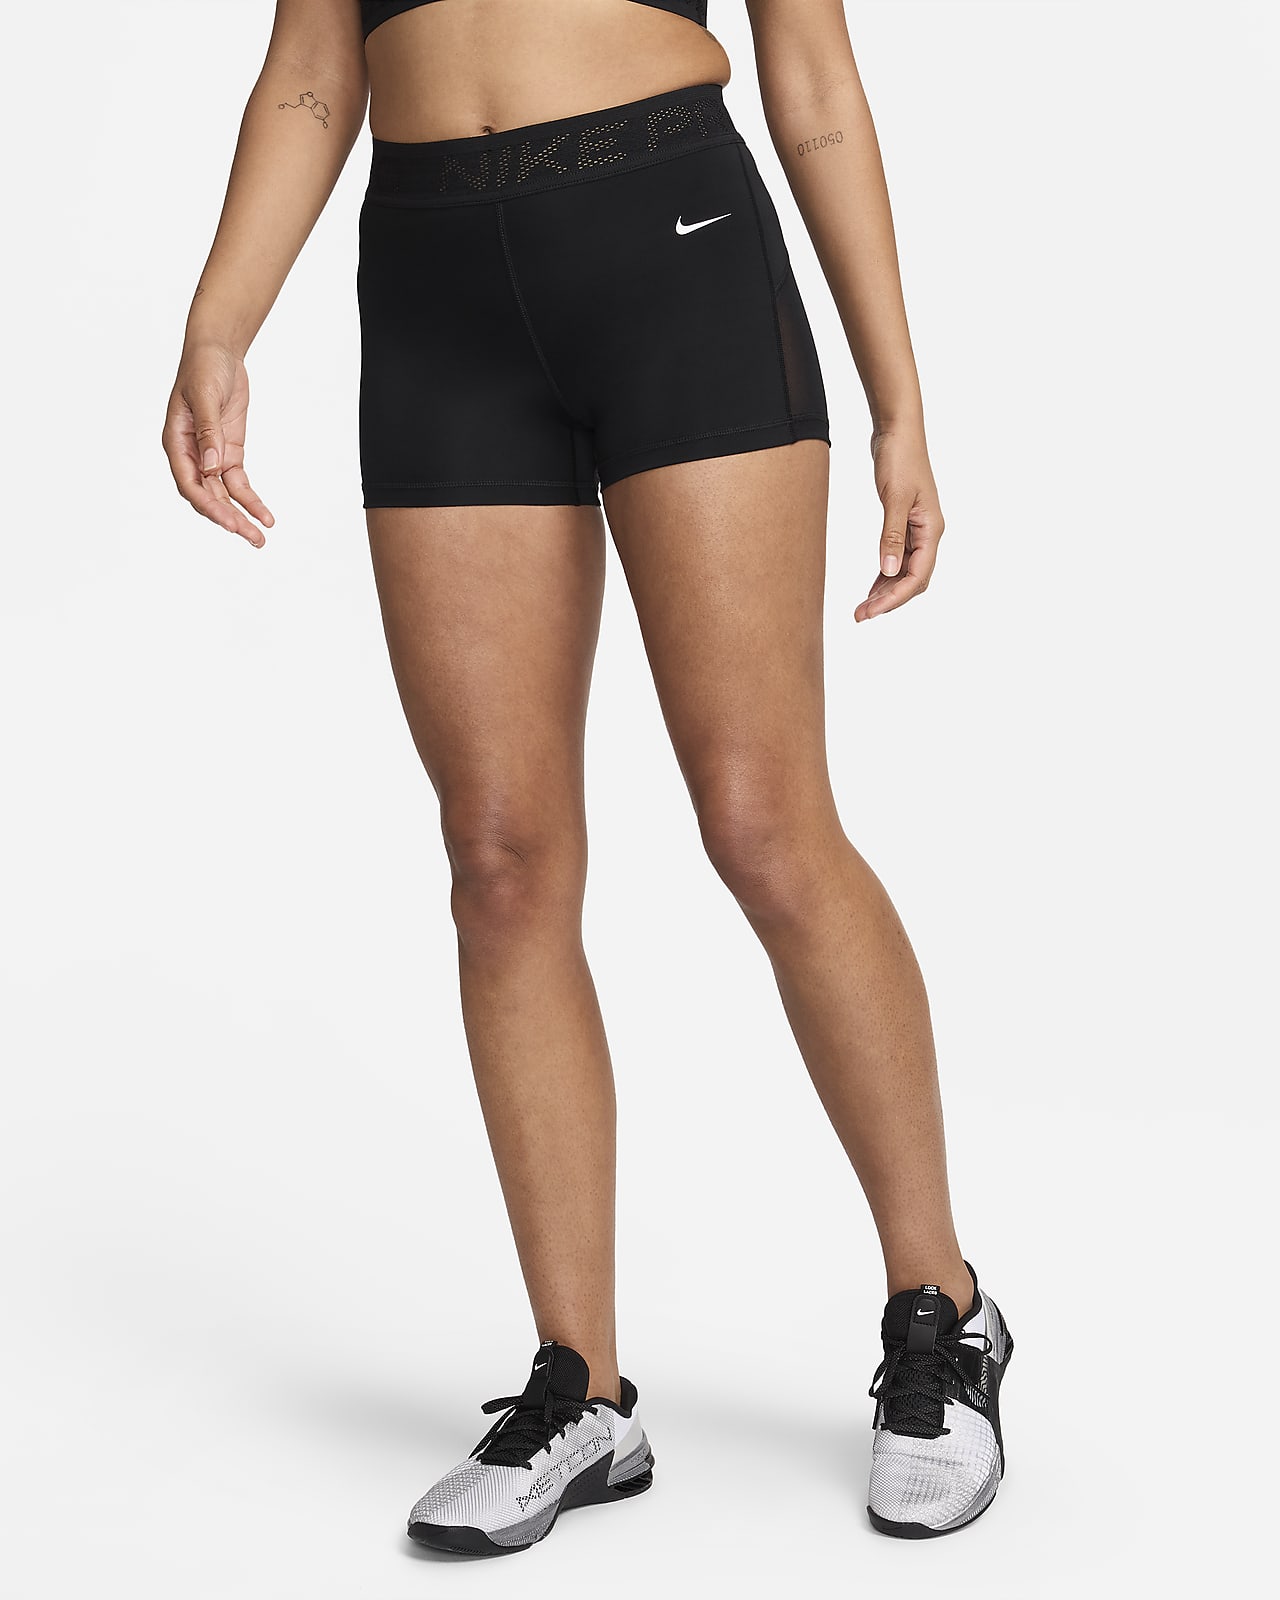 Dámské 8cm kraťasy Nike Pro se středně vysokým pasem a síťovanými díly